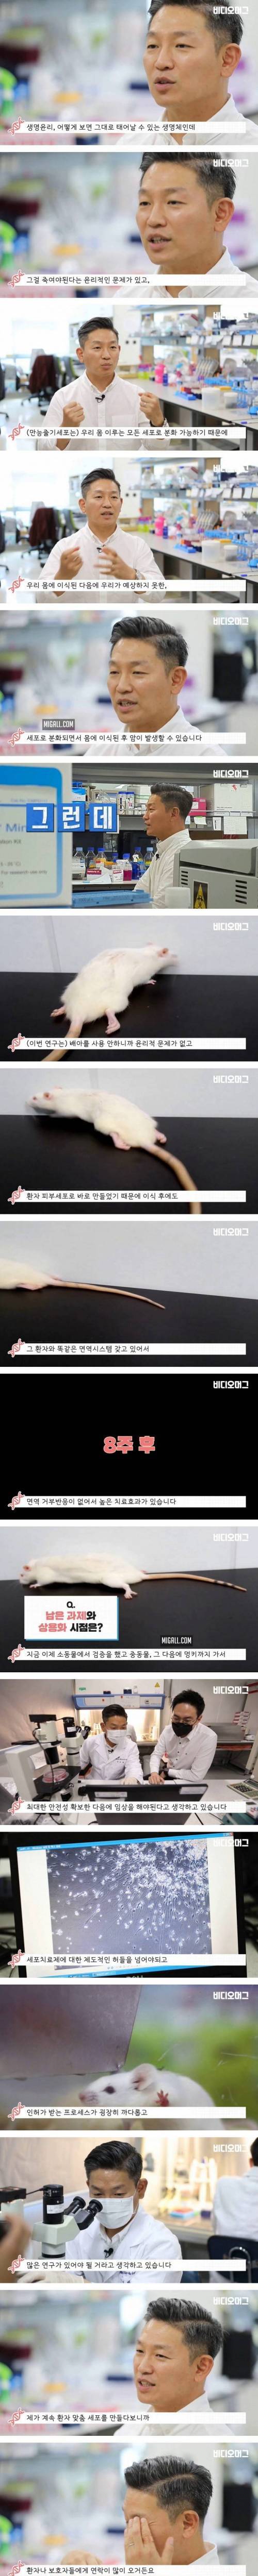 [스압] 하반신 마비 생쥐를 다시 걷게 만든 김정범 교수 연구팀.jpg